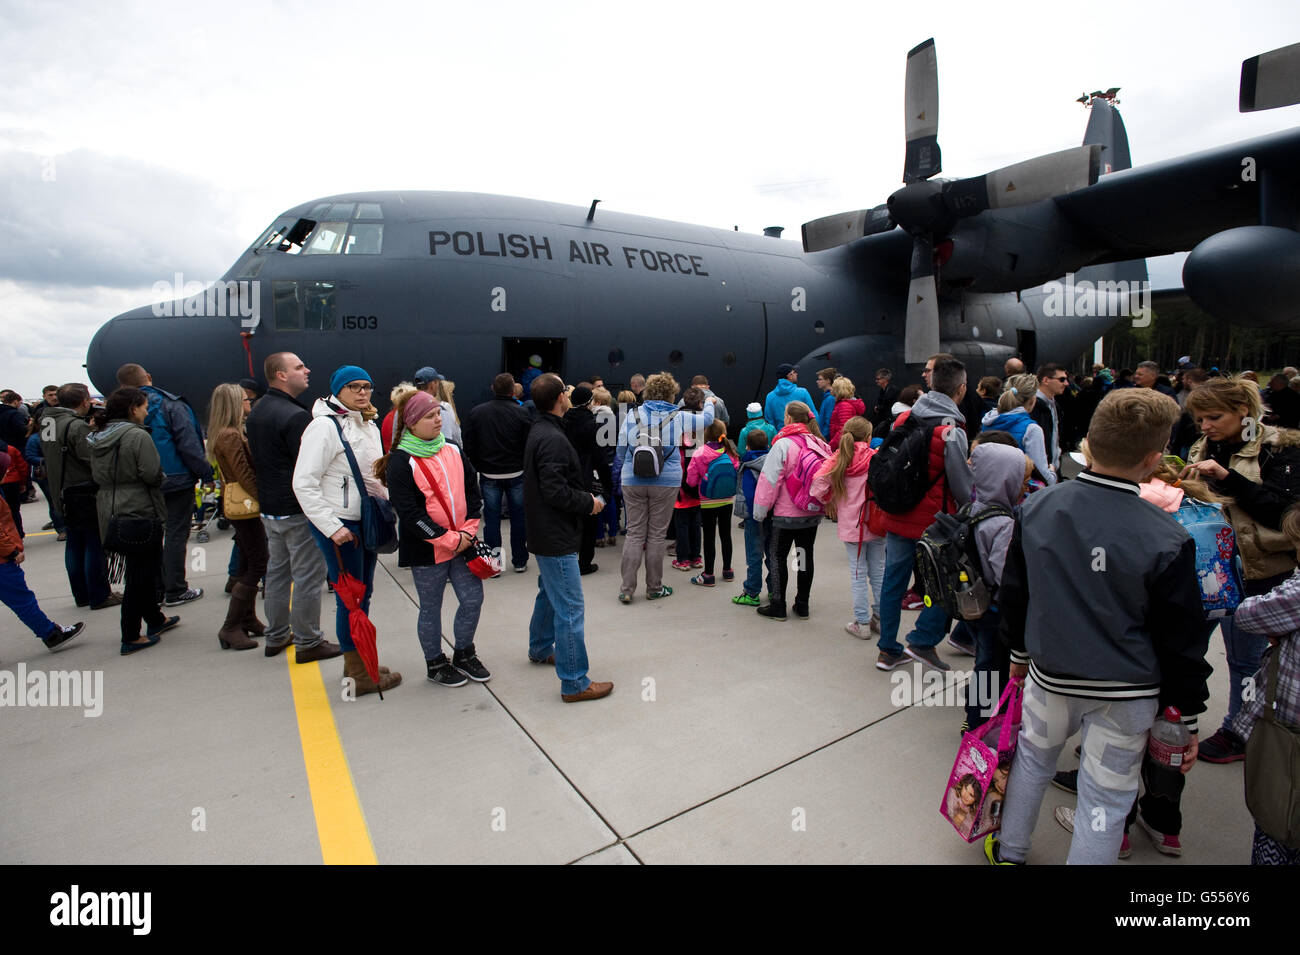 Lask, Pologne. 26 Septembre, 2015. C-130 Hercules de l'Armée de l'Air polonaise ©Marcin Rozpedowski/Alamy Stock Photo Banque D'Images